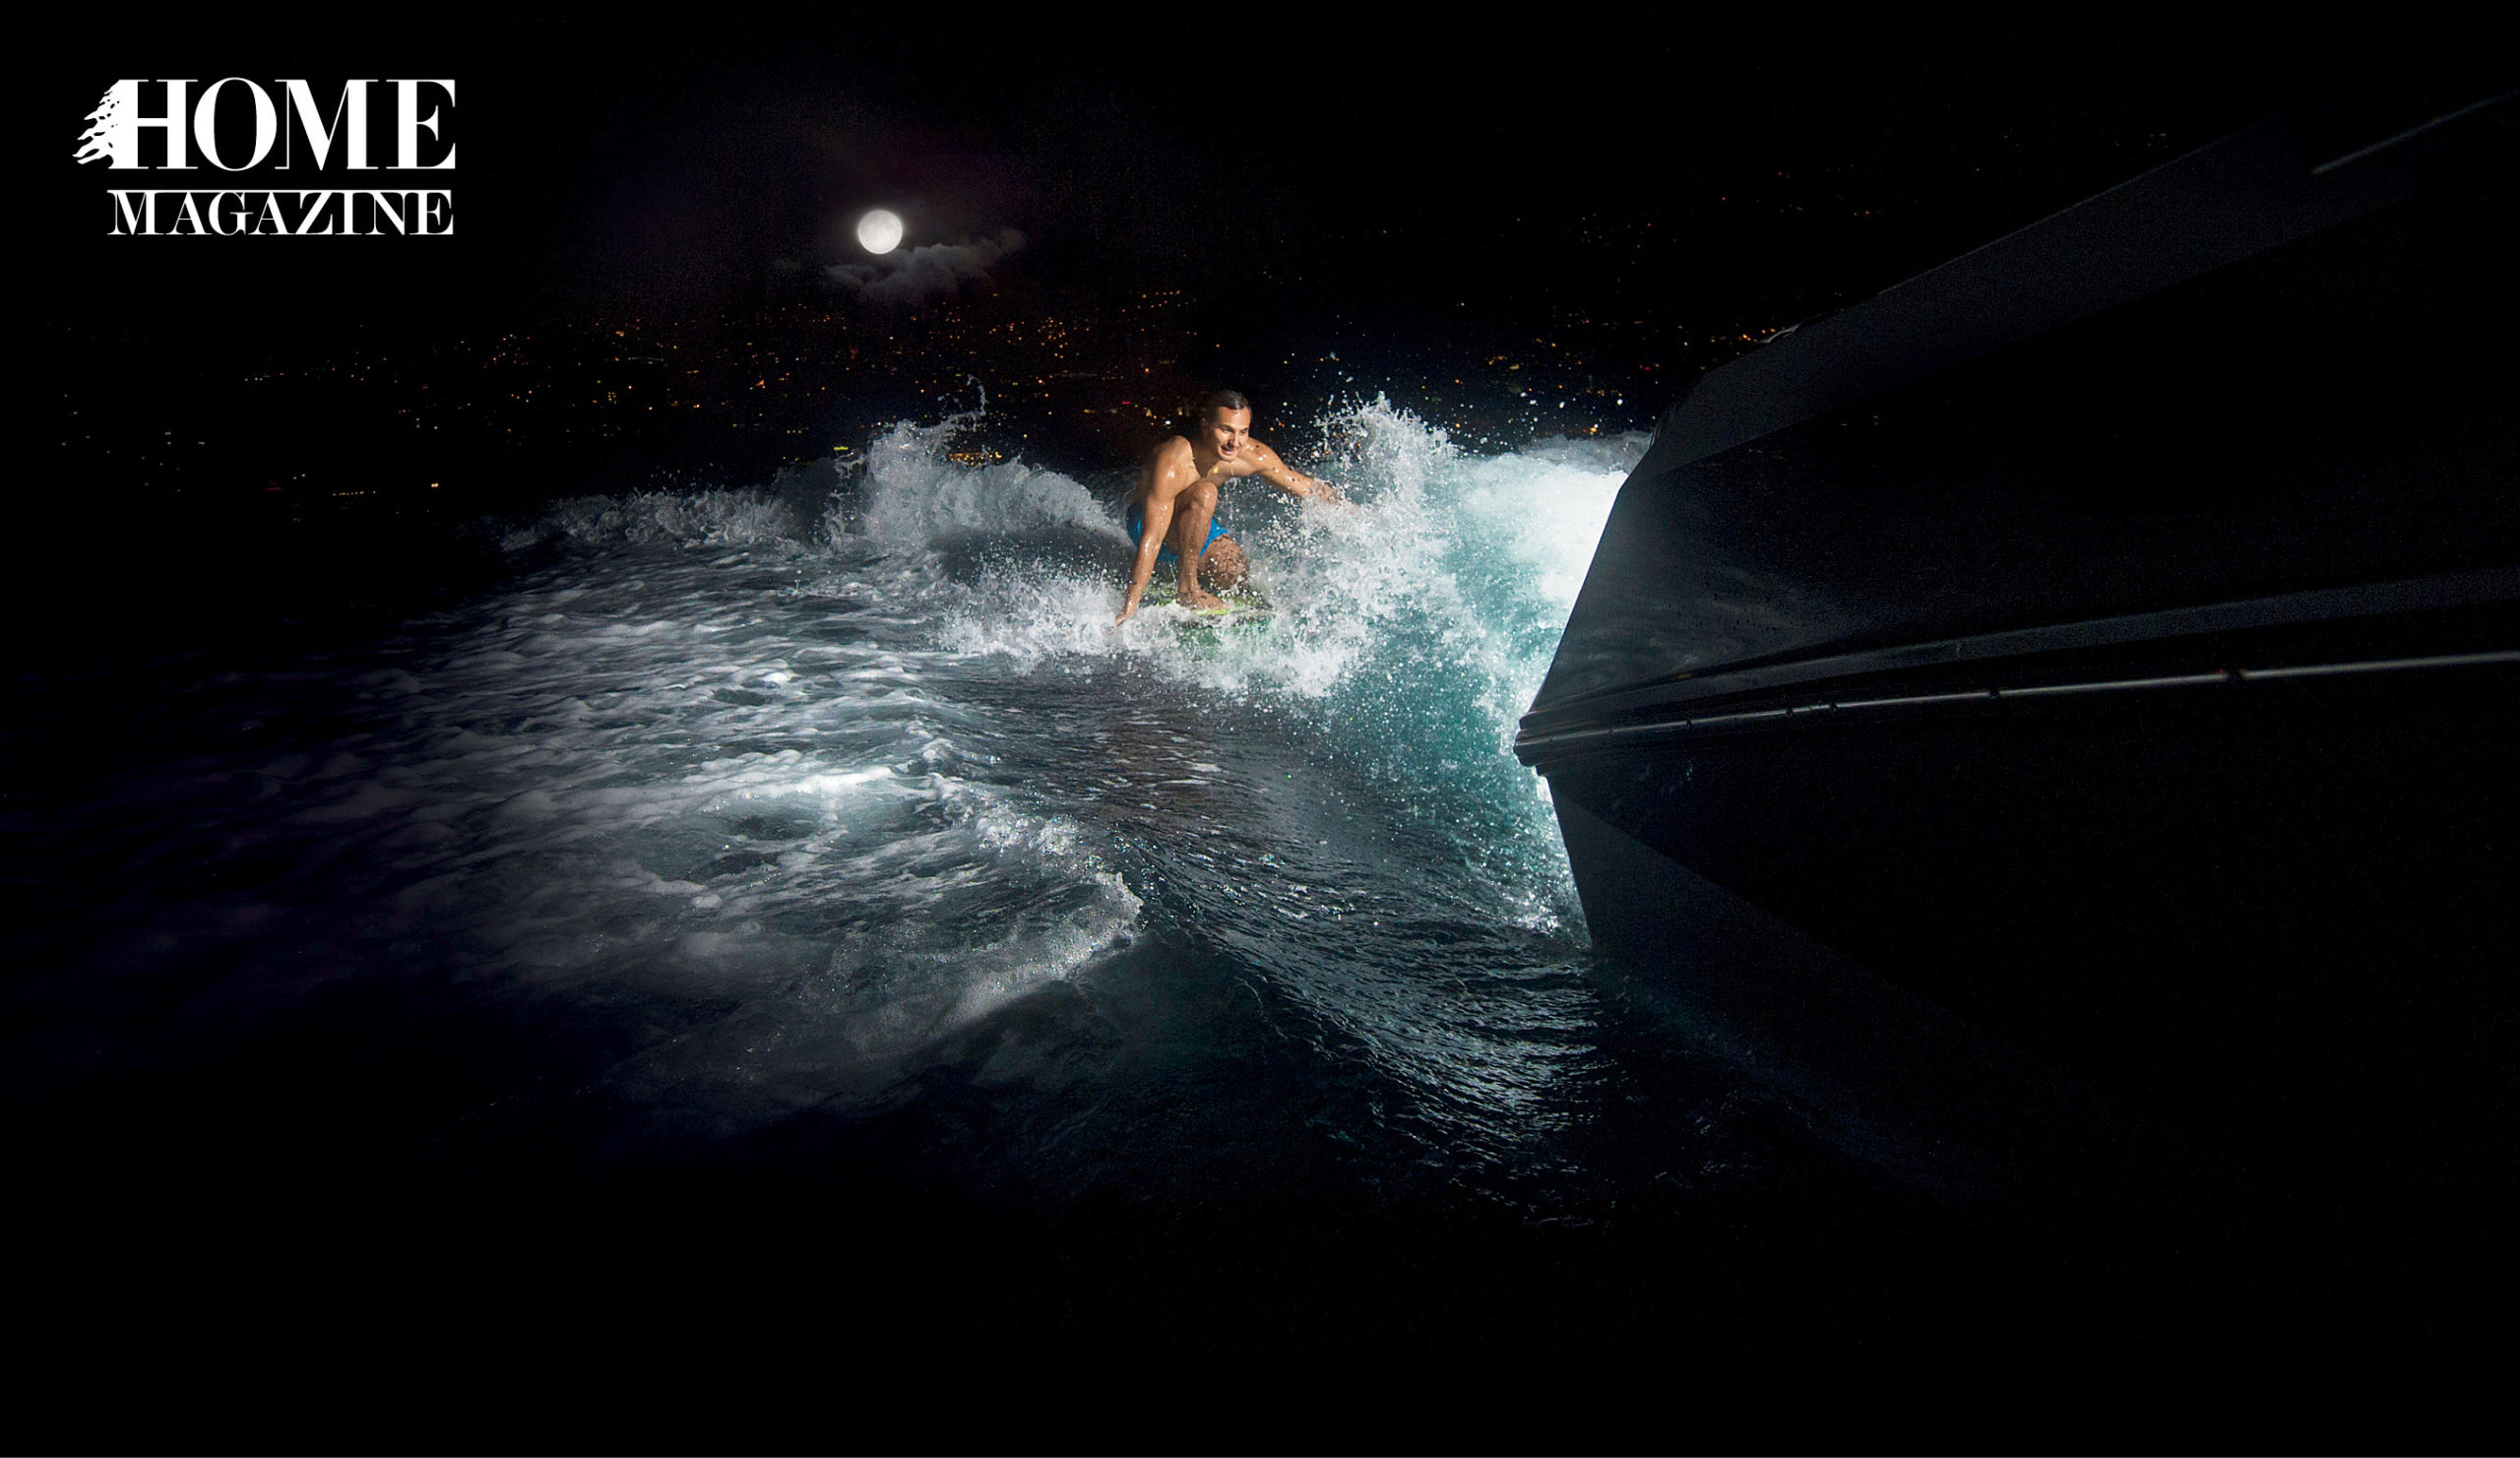 Man water surfing at night